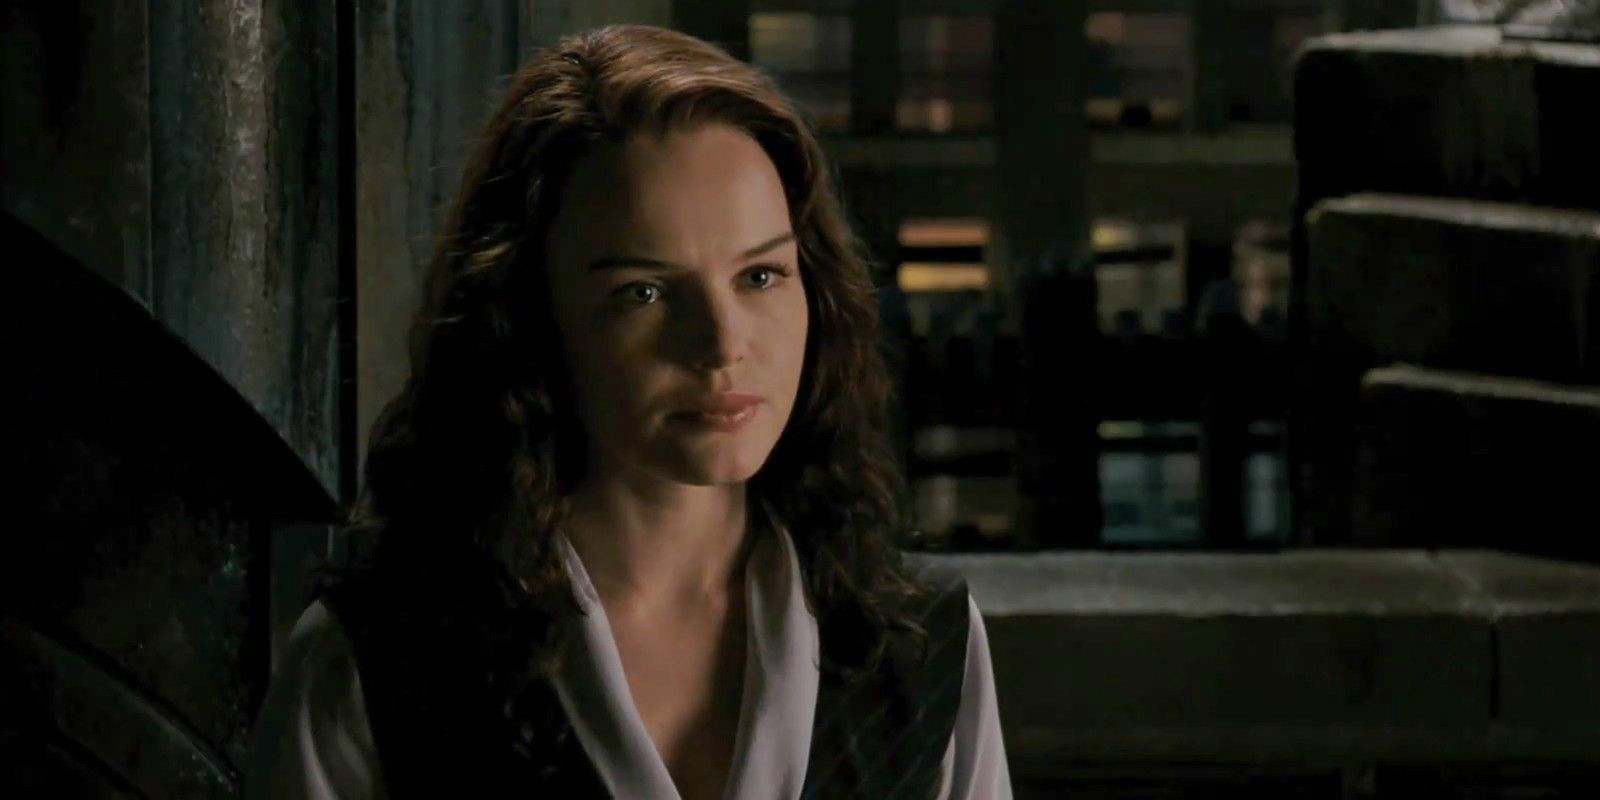 Kate Bosworth as Lois Lane